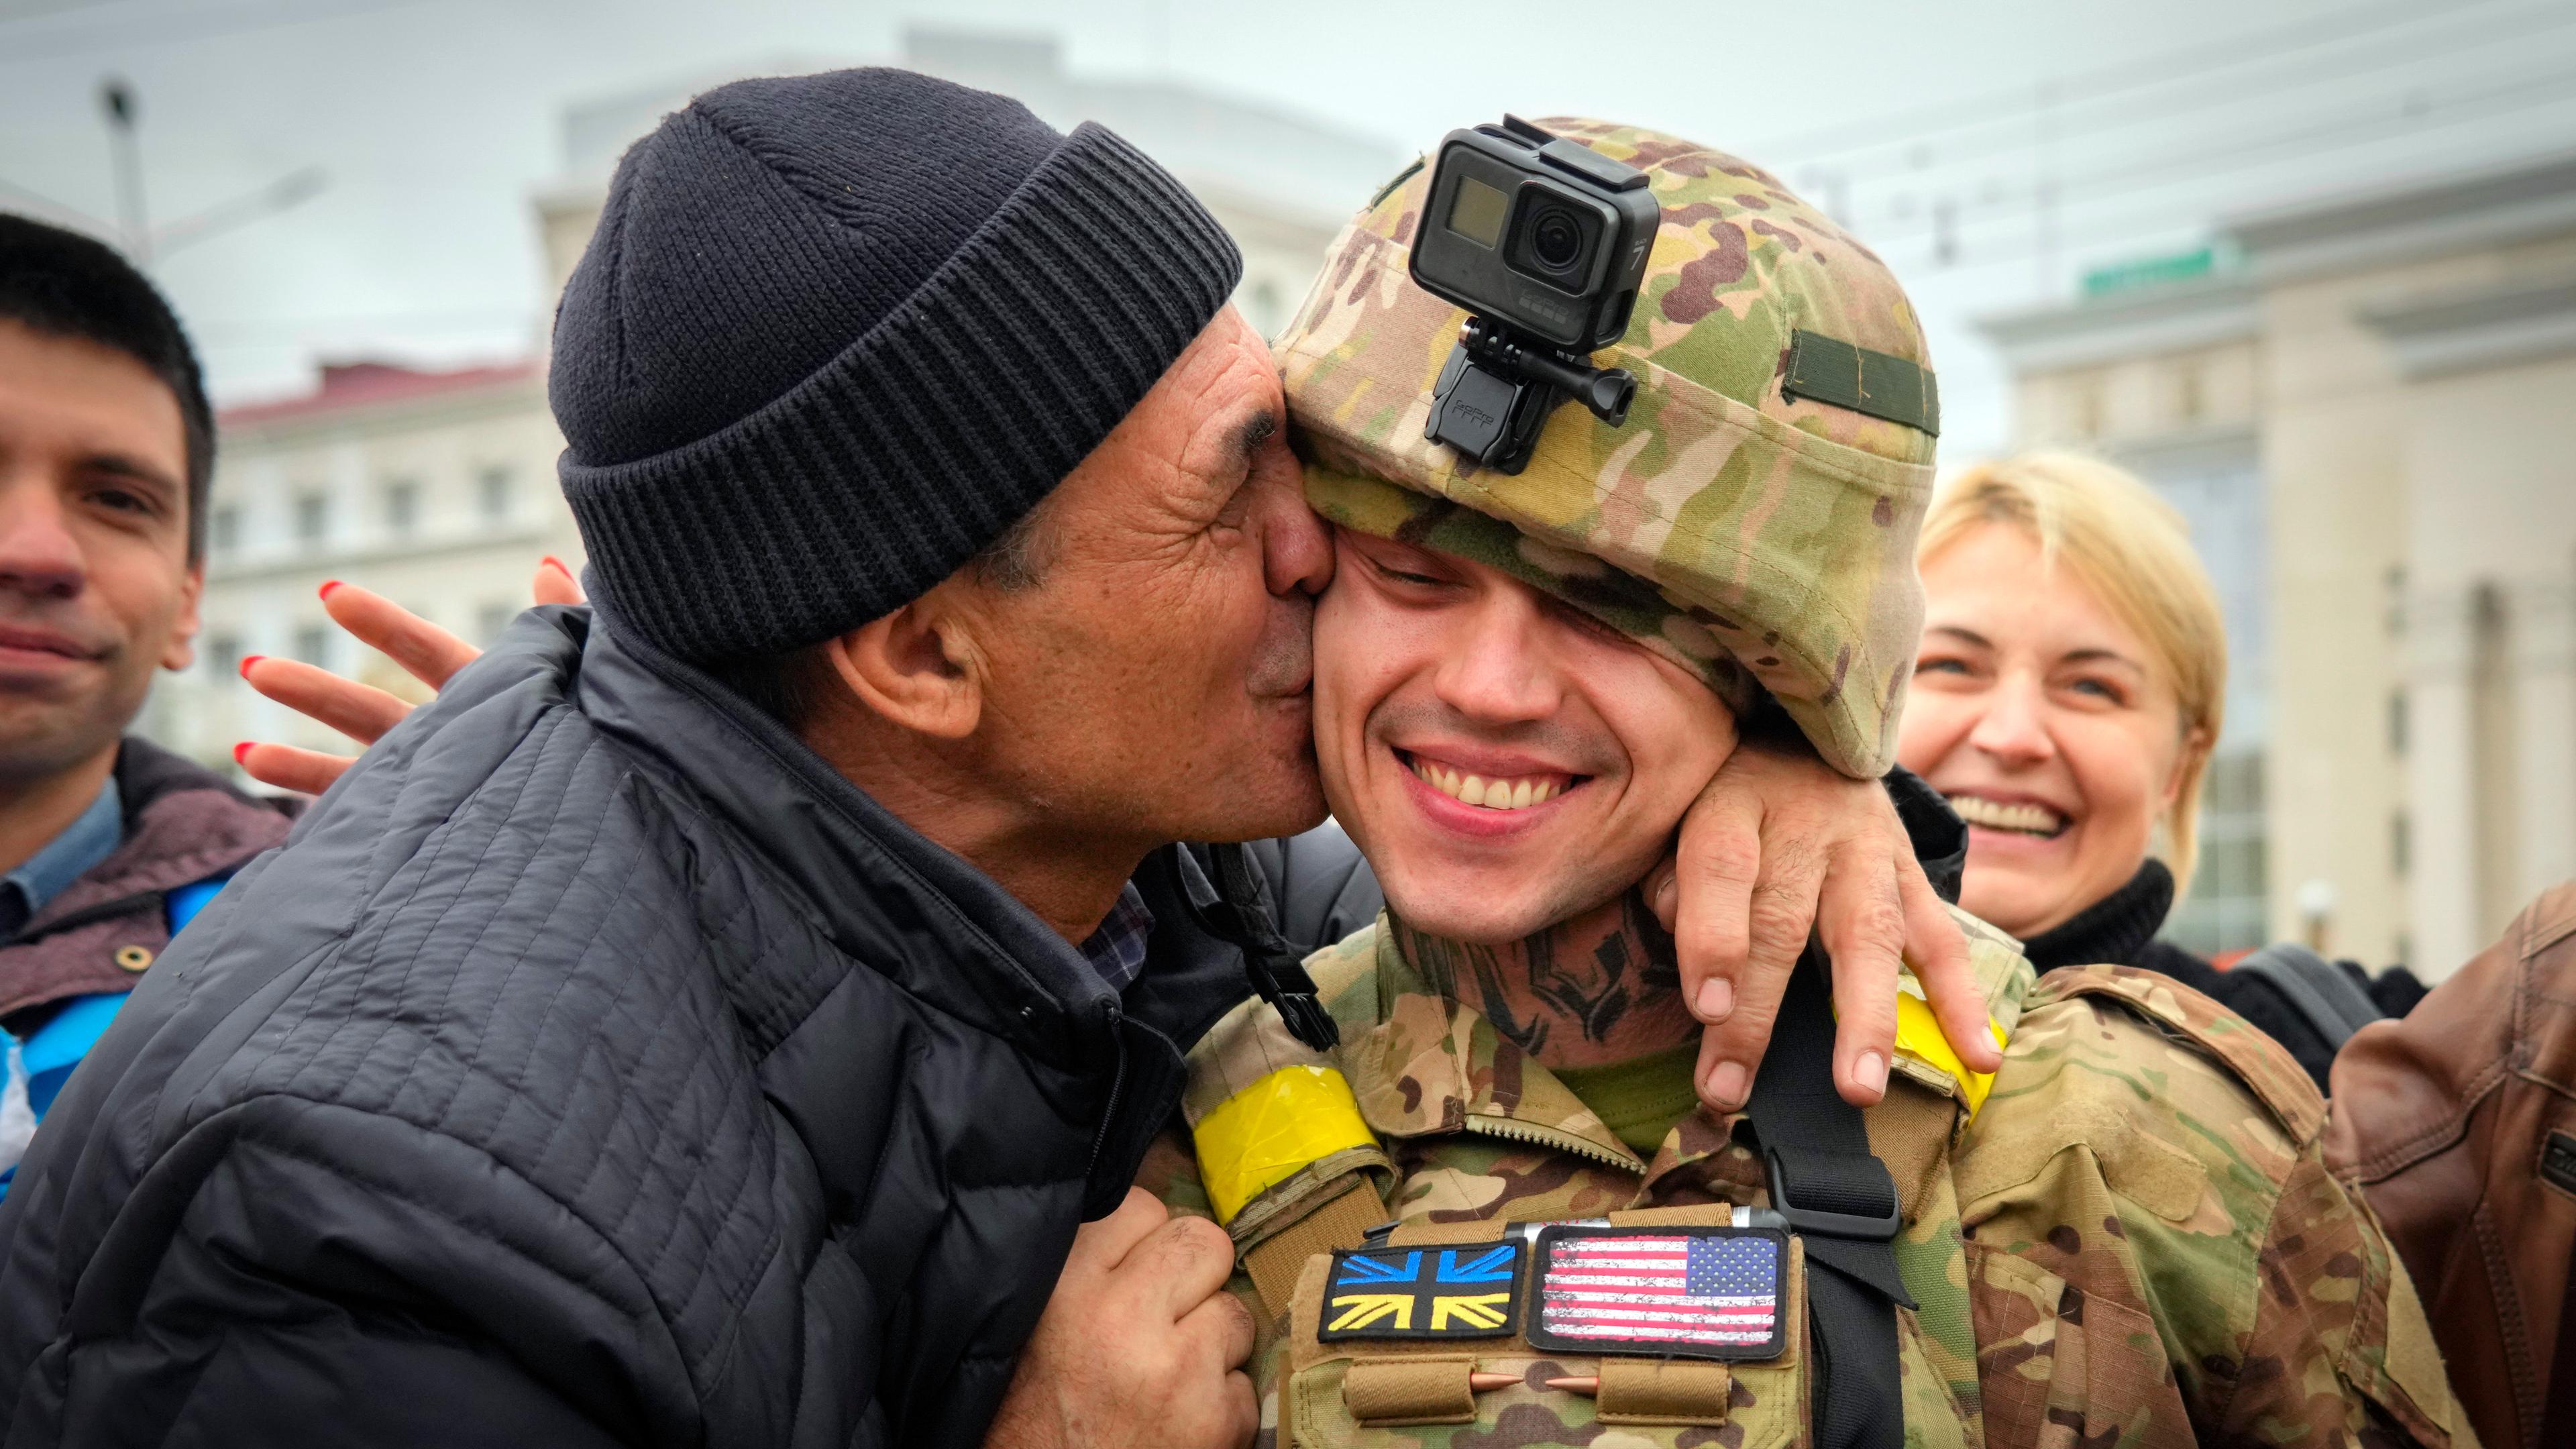 Ein Einwohner von Cherson küsst einen ukrainischen Soldaten.